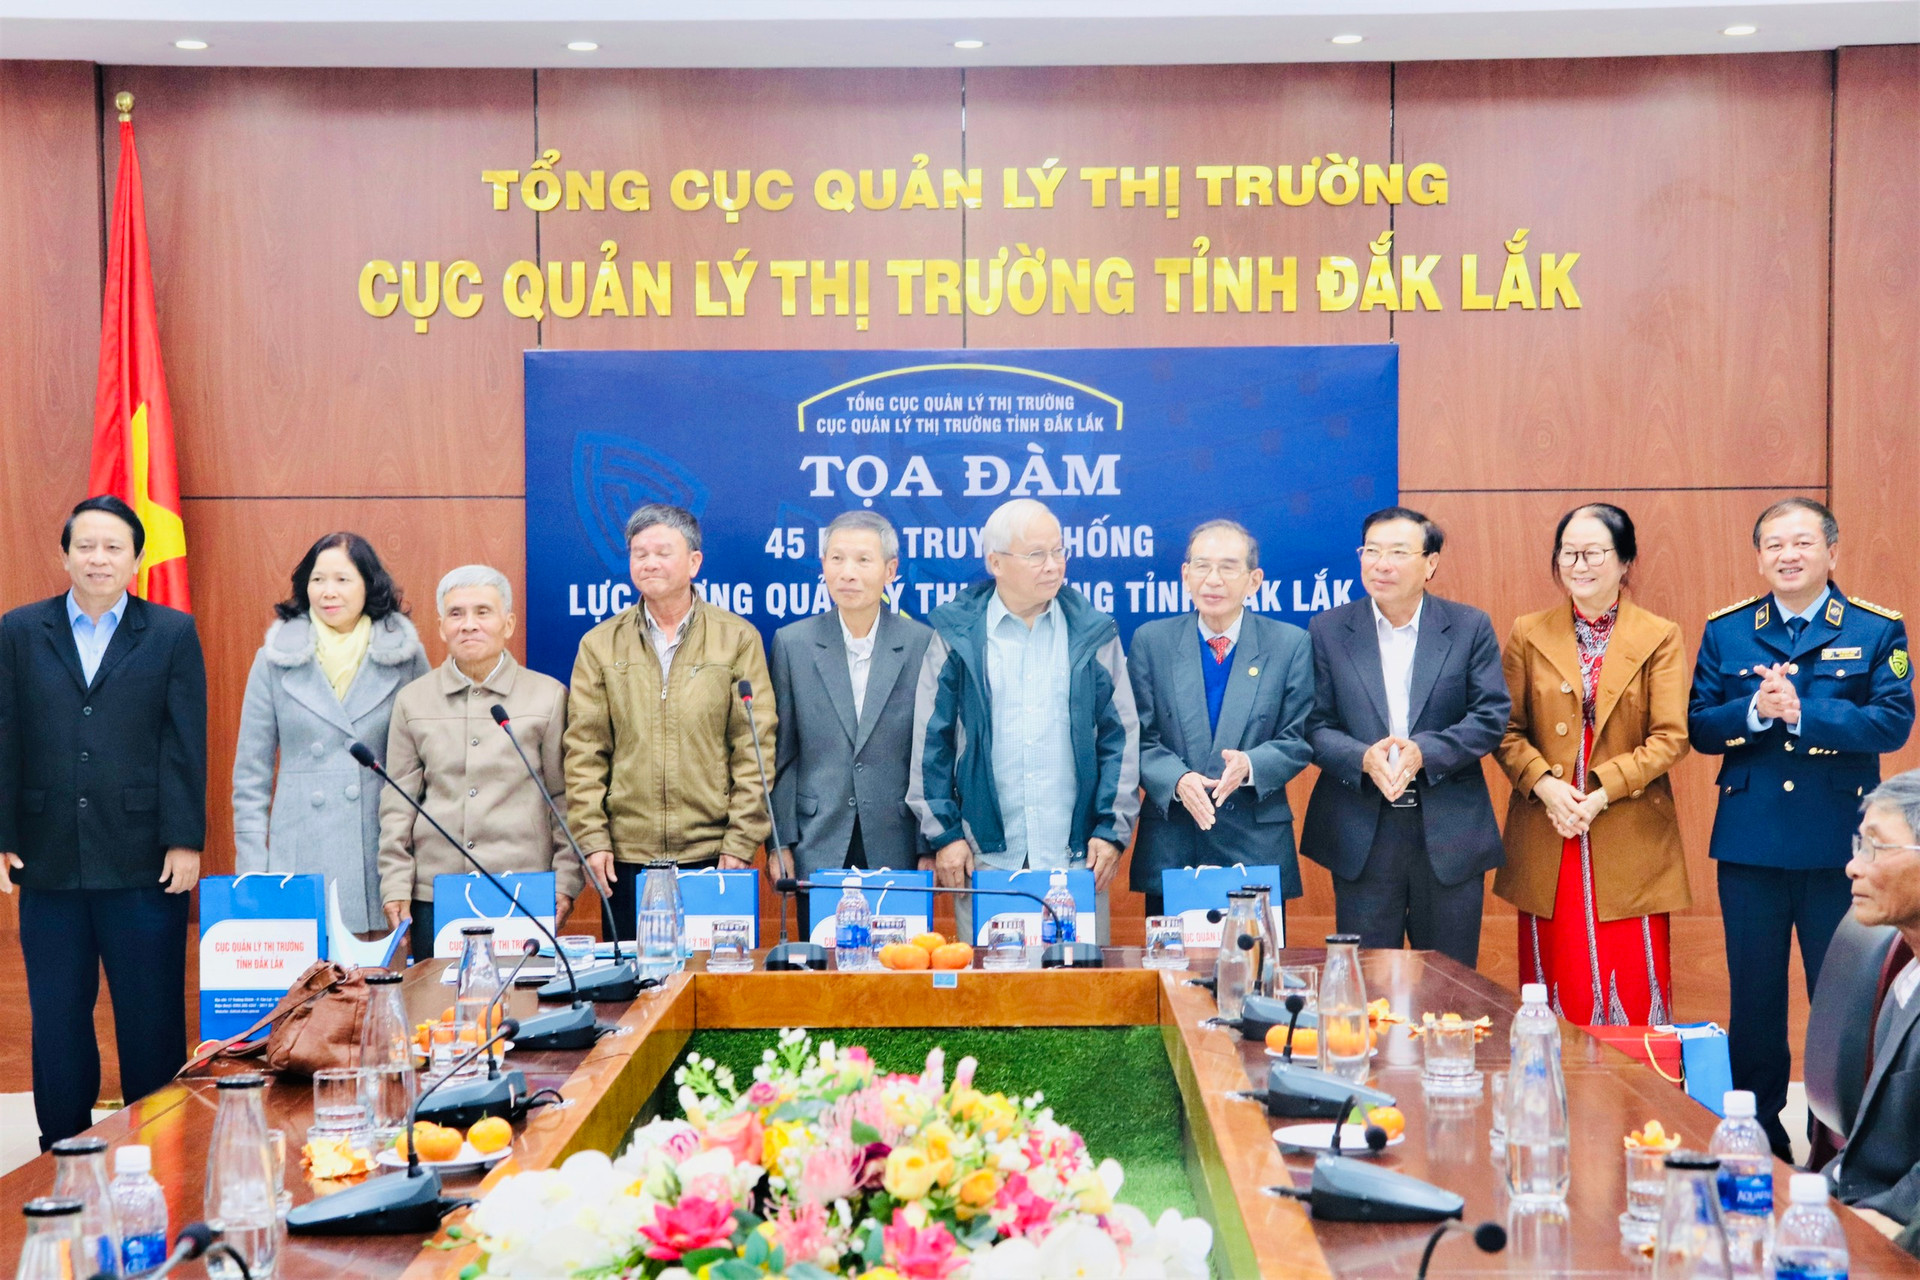 Lãnh đạo Cục Quản lý thị trường tỉnh Đắk Lắk trao quà lưu niệm cho cán bộ hưu trí.